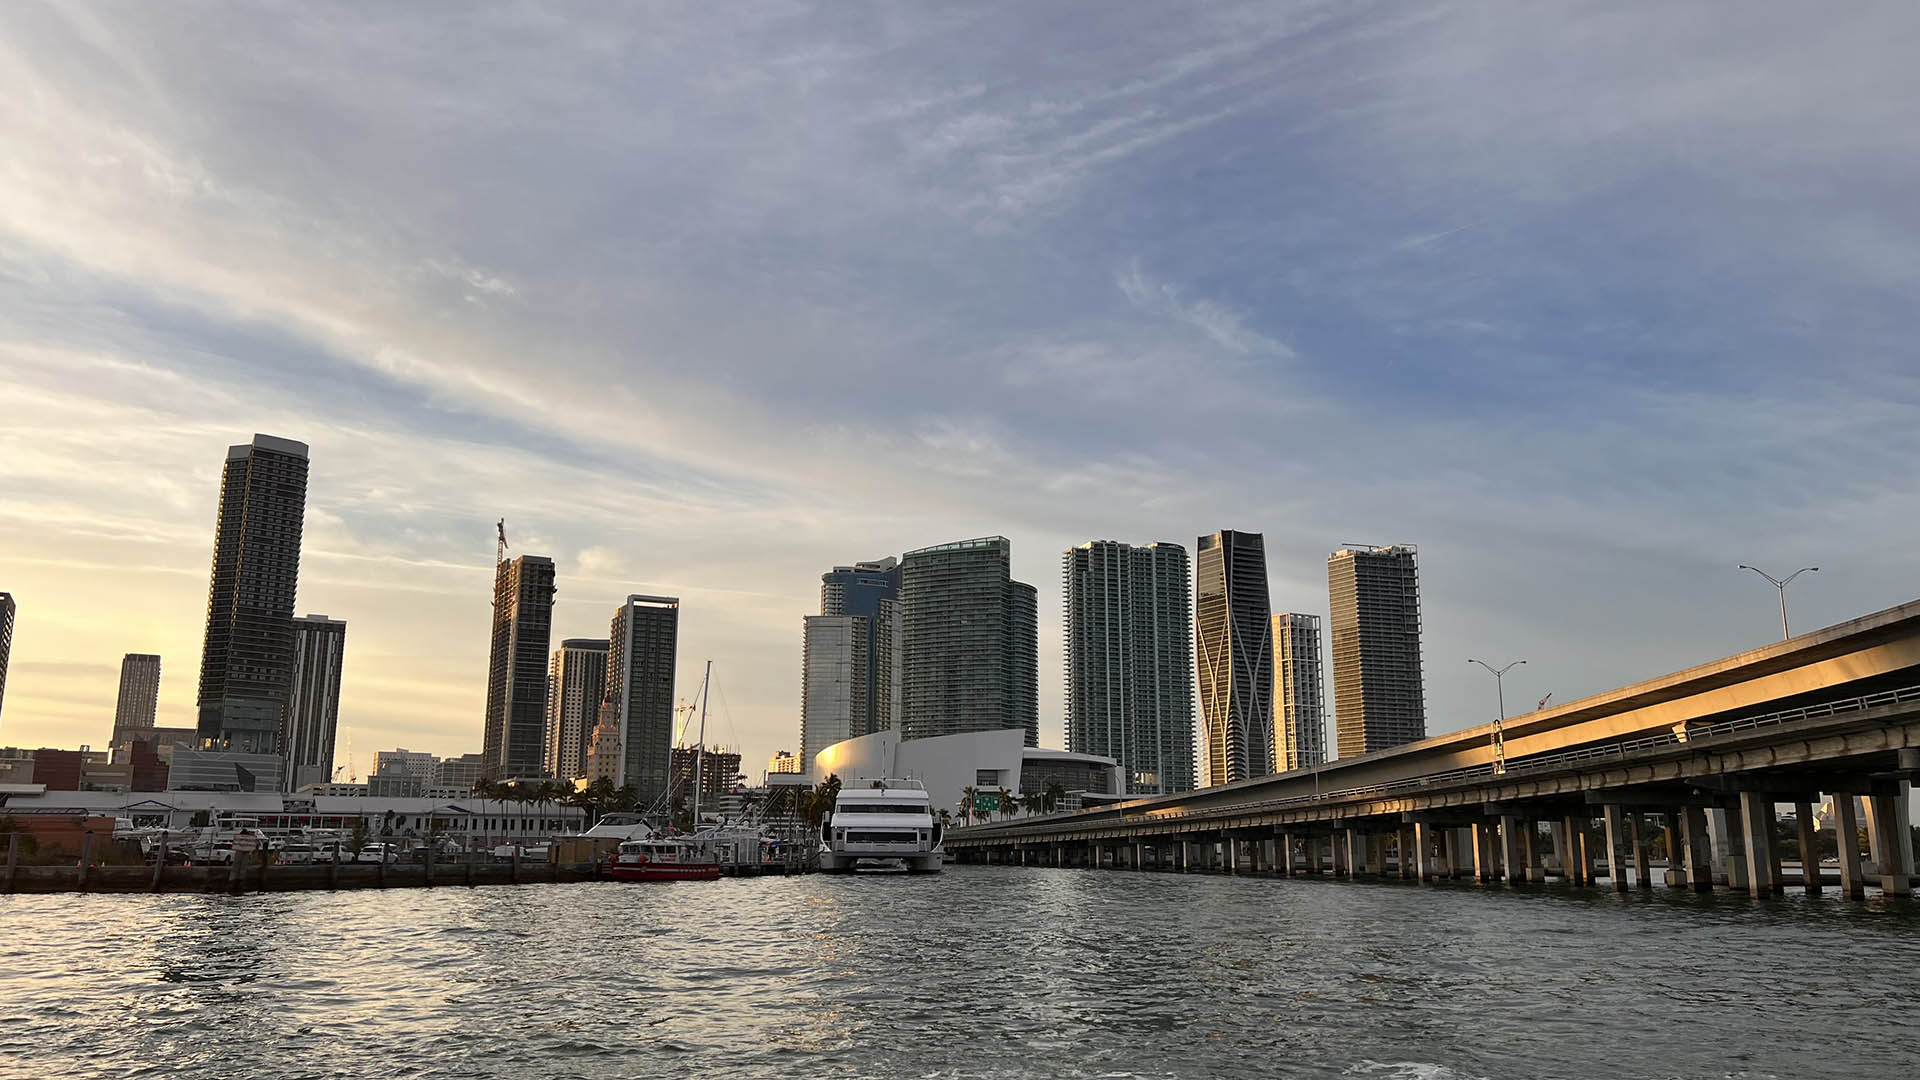 Ciudades como Miami pueden ofrecer la misma cantidad de ofertas laborales y vida urbana que otros centros de población en el norte de EEUU. Foto: Opy Morales